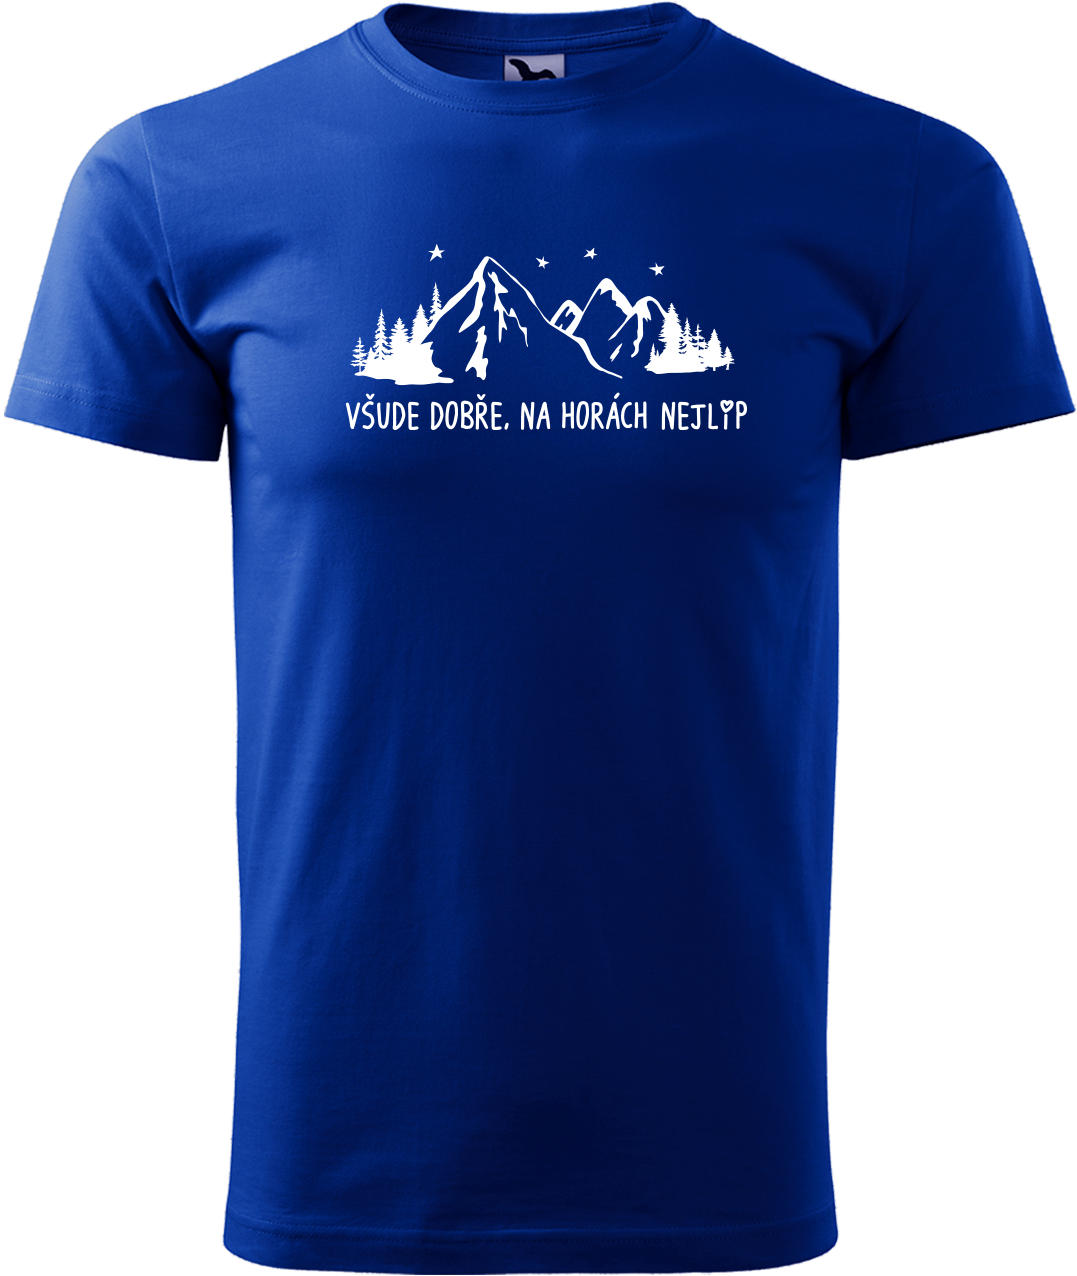 Pánské tričko na hory - Všude dobře, na horách nejlíp Velikost: XL, Barva: Královská modrá (05)